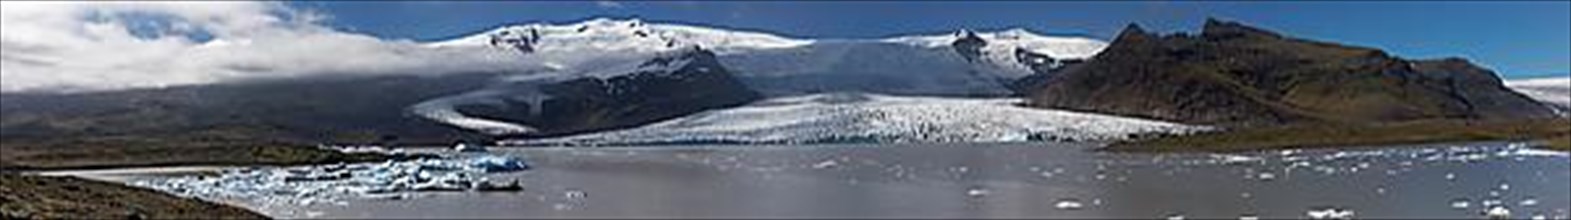 The glacier Fjallsjoekull with the glacial lake Fjallsarlon